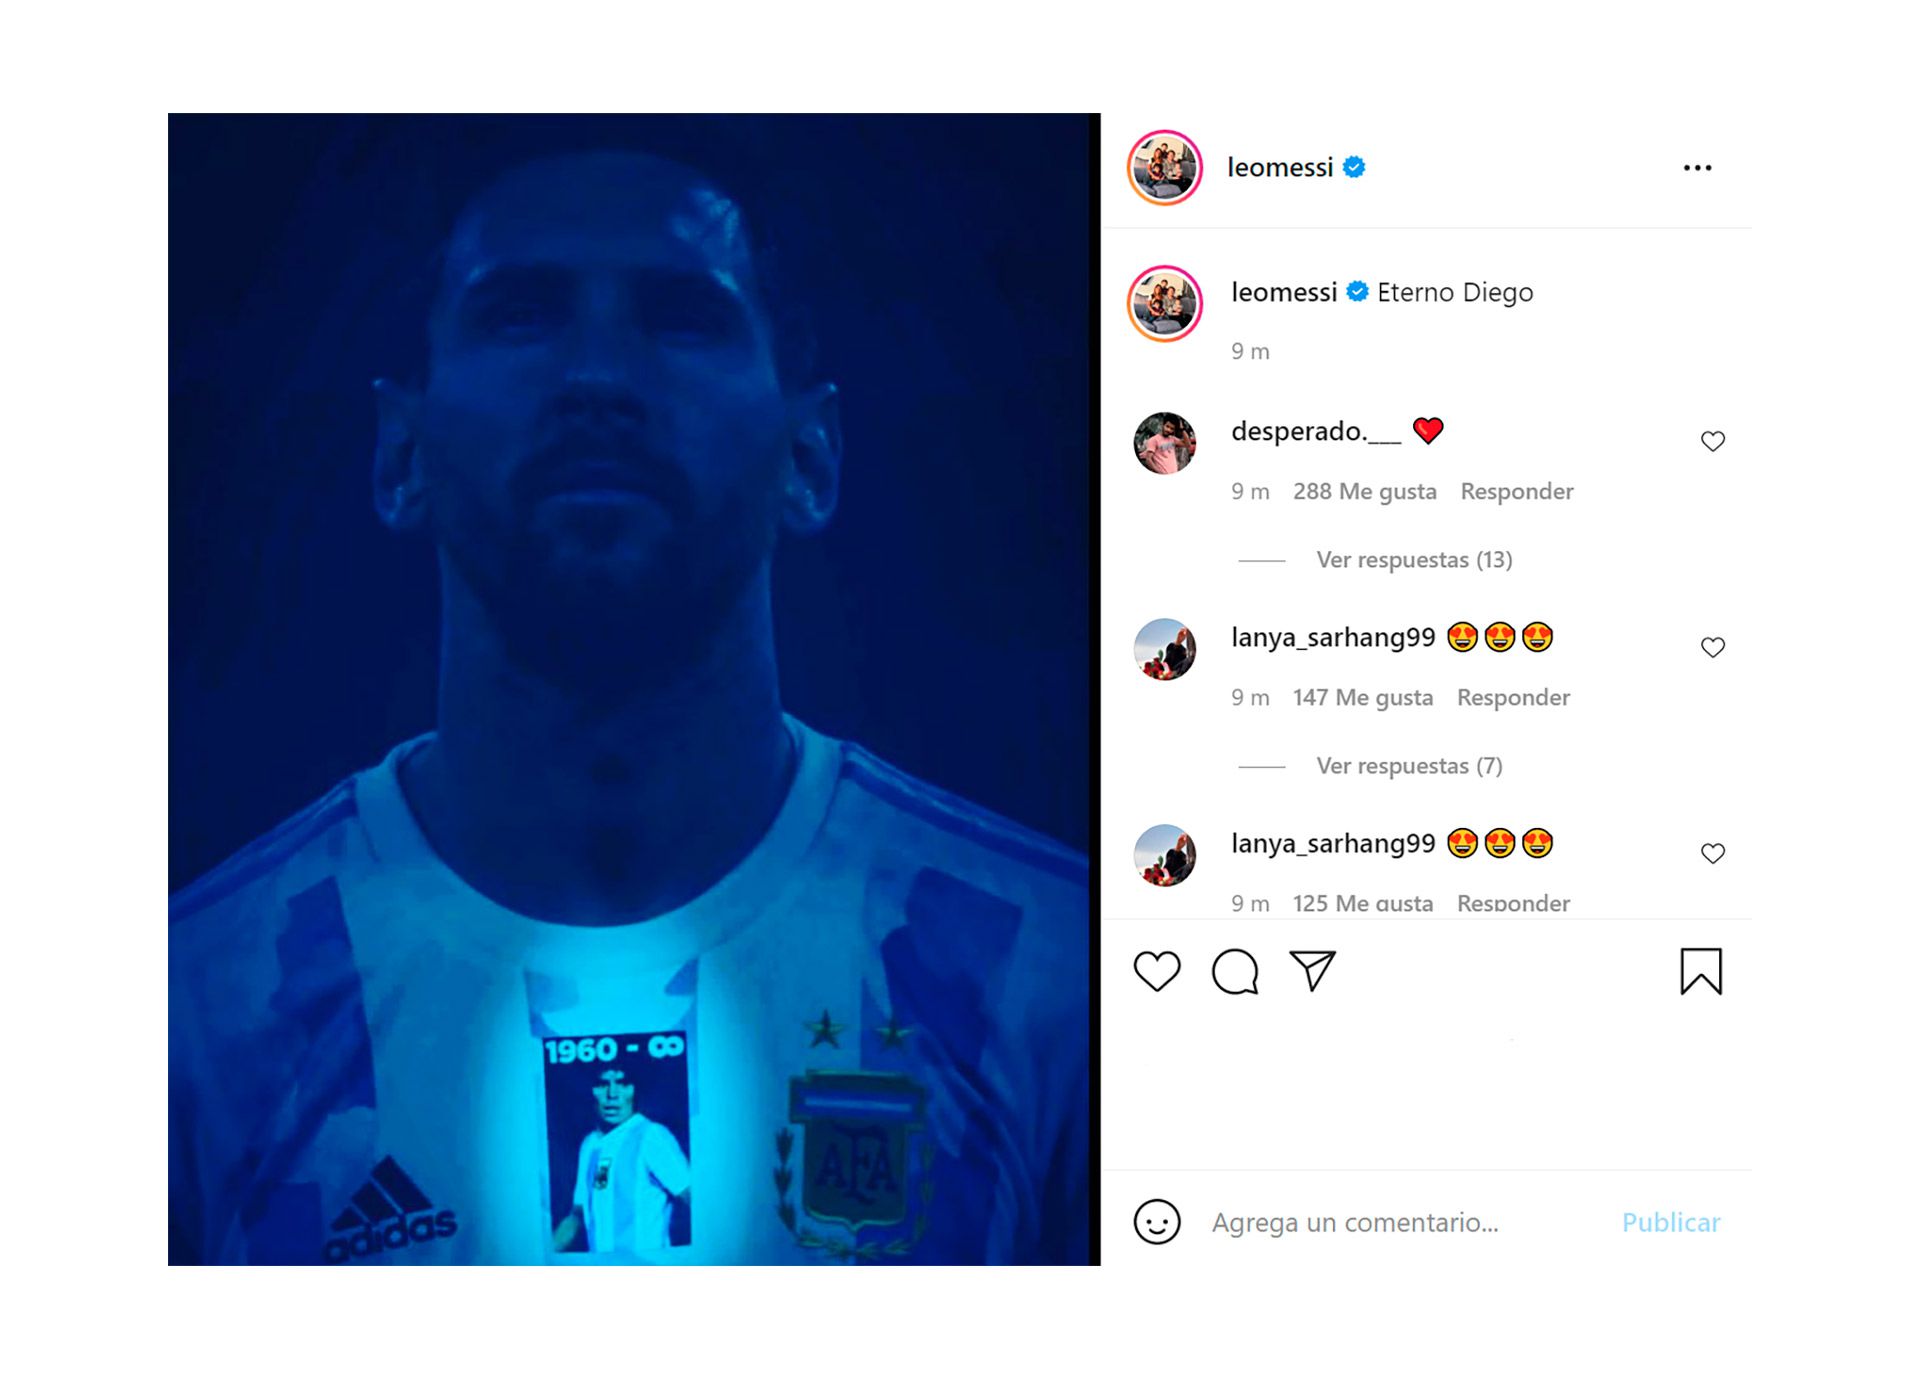 El posteo de Messi dedicado a Maradona